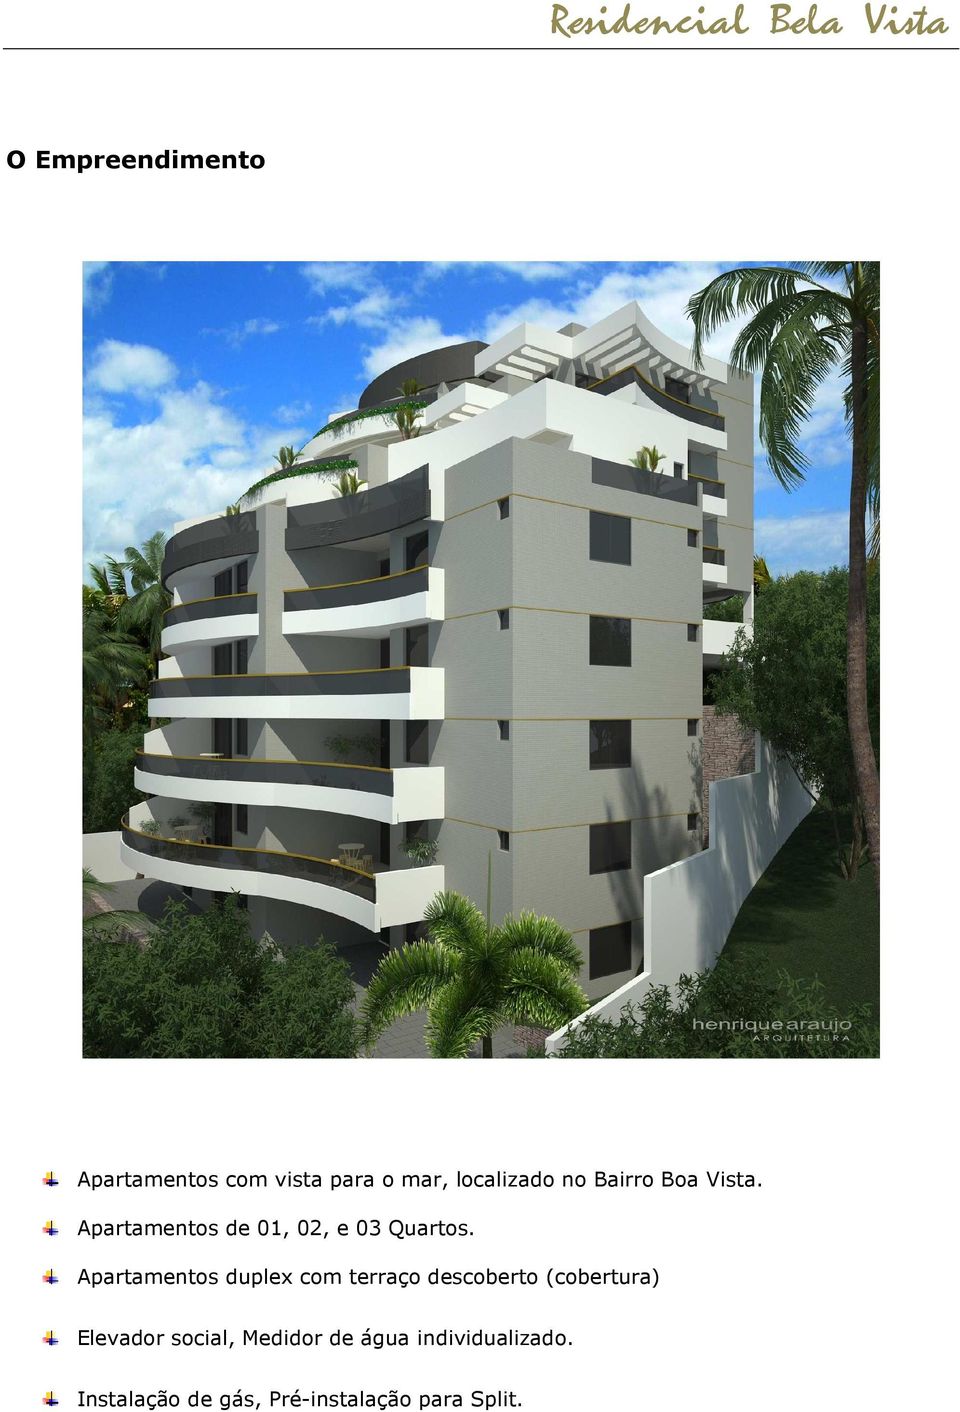 Apartamentos duplex com terraço descoberto (cobertura) Elevador